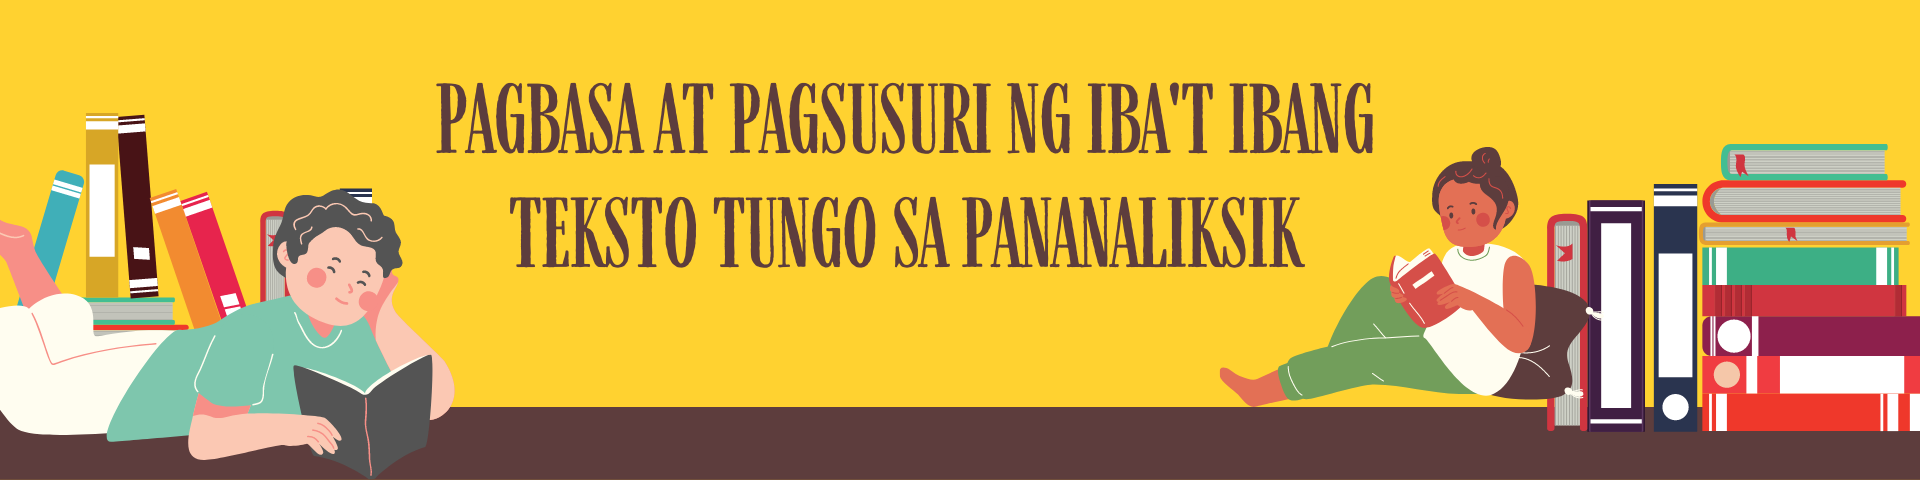 Pagbasa at Pagsuri ng Iba’t Ibang Teksto sa Pananaliksik